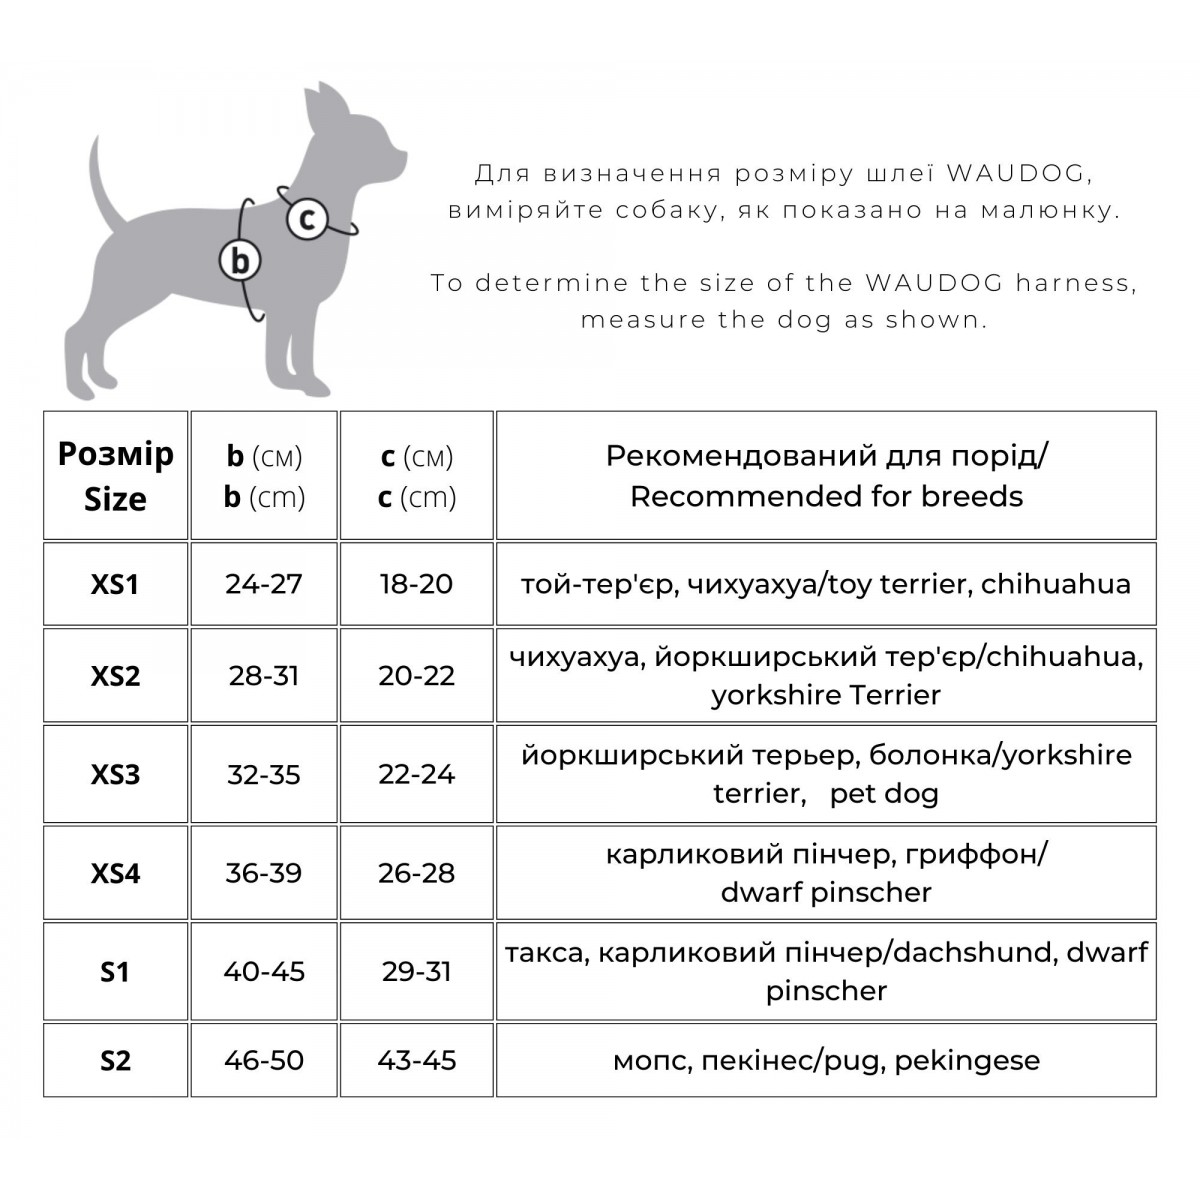 Шлея для собак м'яка Waudog Clothes, з QR паспортом, Вау, XS2, 28-31х20-22 см - фото 4